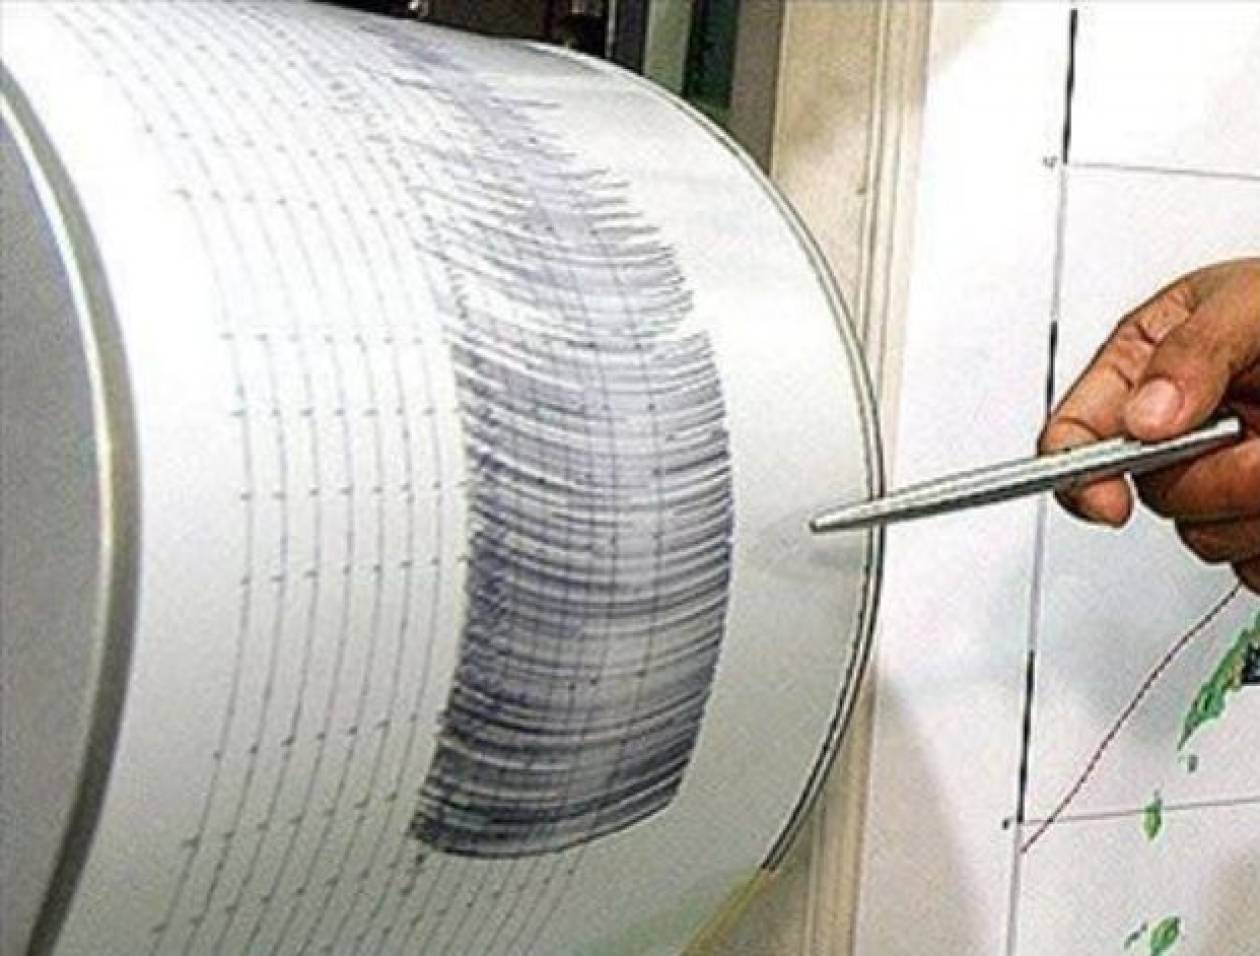 Σεισμός 7,2 Ρίχτερ στον Ειρηνικό